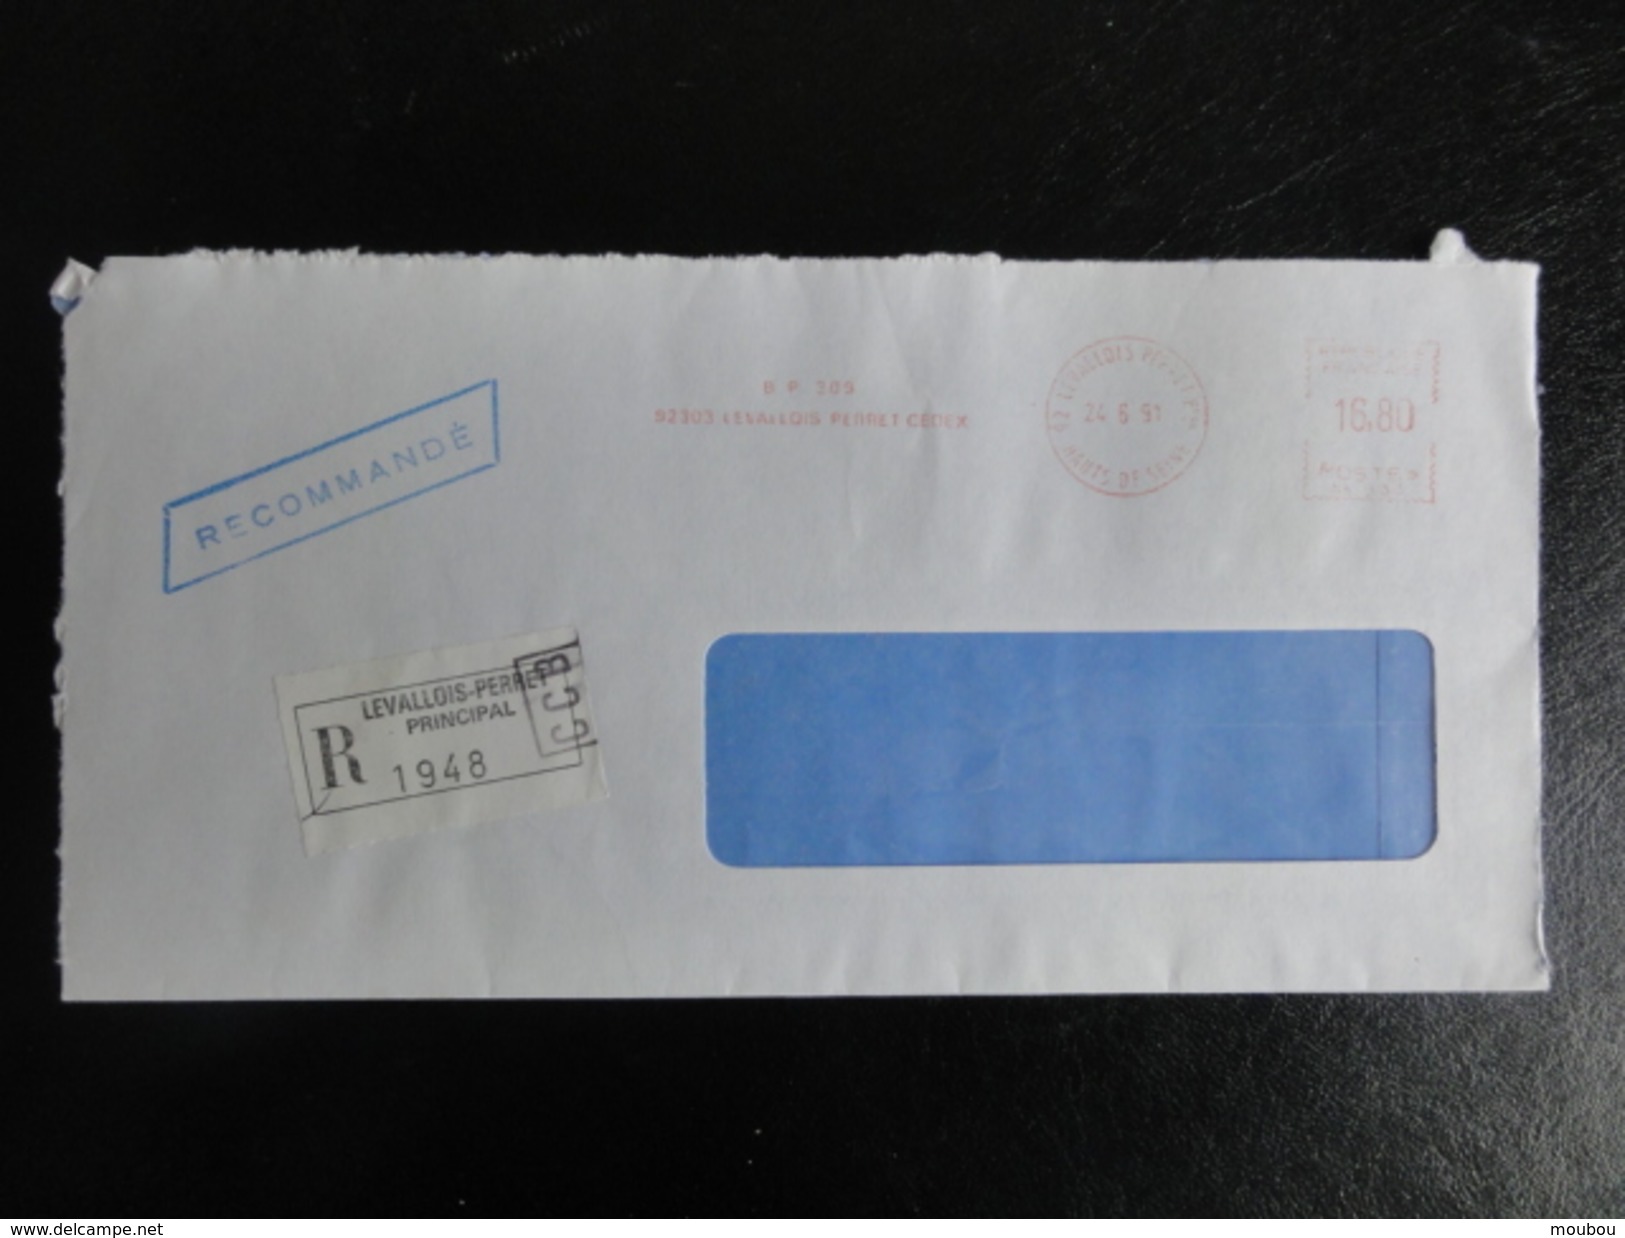 Lettre Recommandée Du 24/6/1991 - Avec étiquette Collante De Levallois-Perret - 16,80 Francs-affranchissement Par Ema - Postal Rates